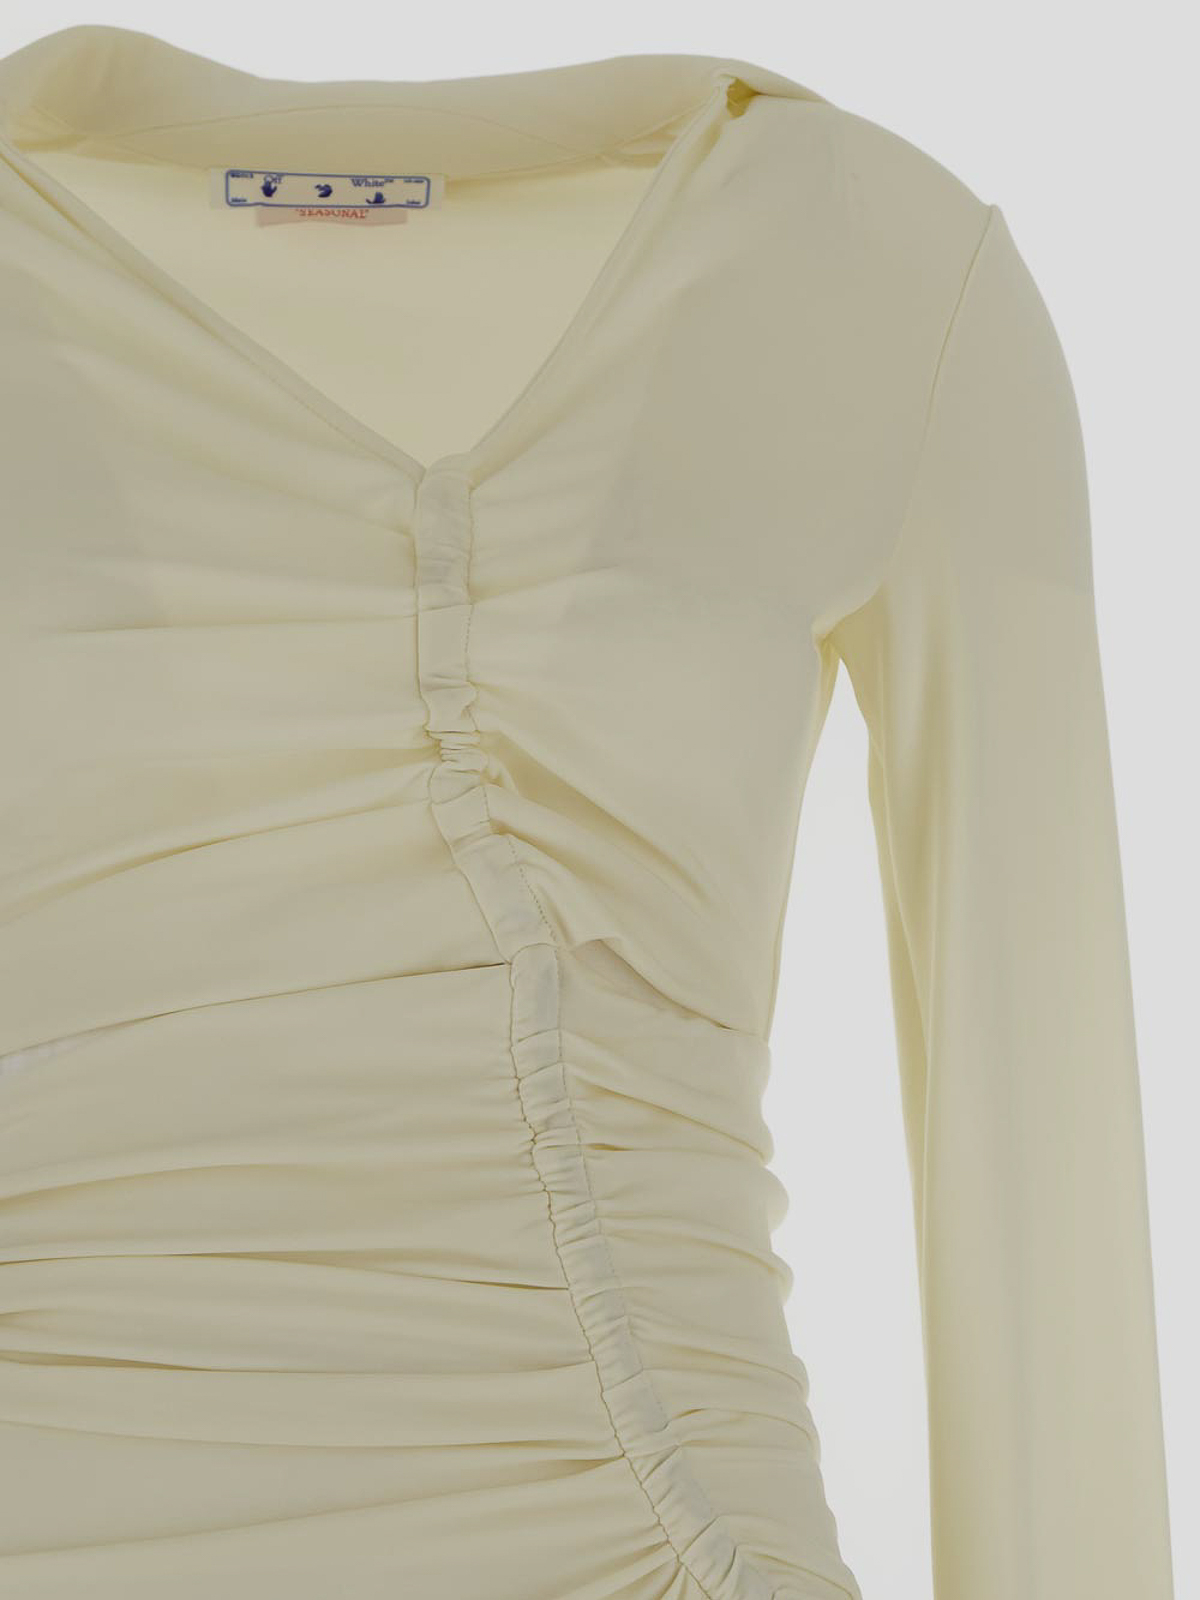 Shop Off-white Midi Dress